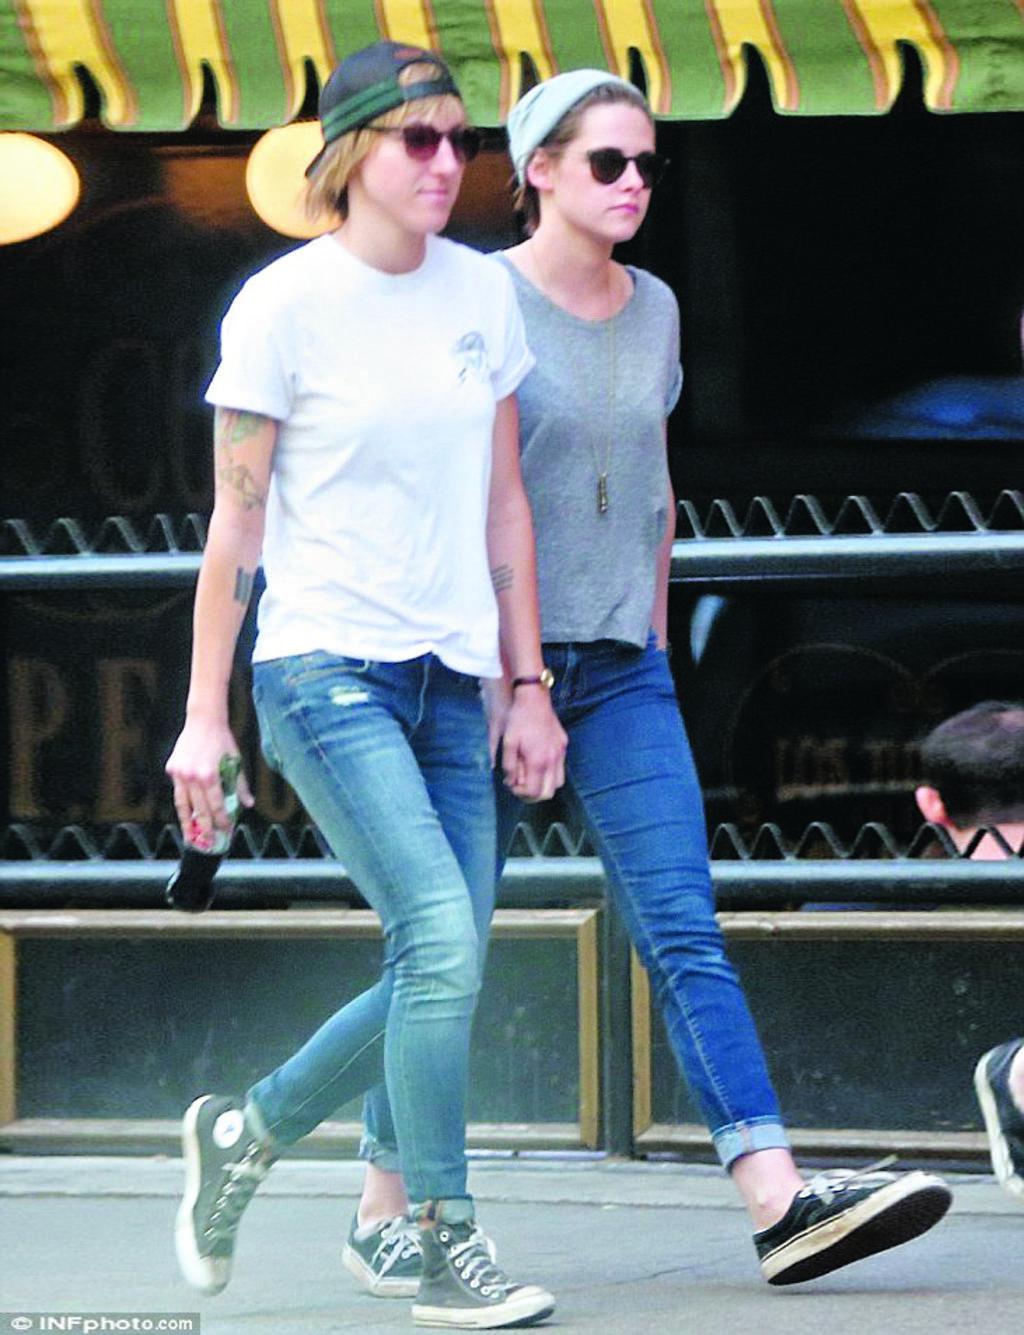 ¿Pareja?. La actriz Kristen Stewart y su amiga Alicia Cargile se les vio muy cariñosas paseando por Los Ángeles tomadas de la mano.